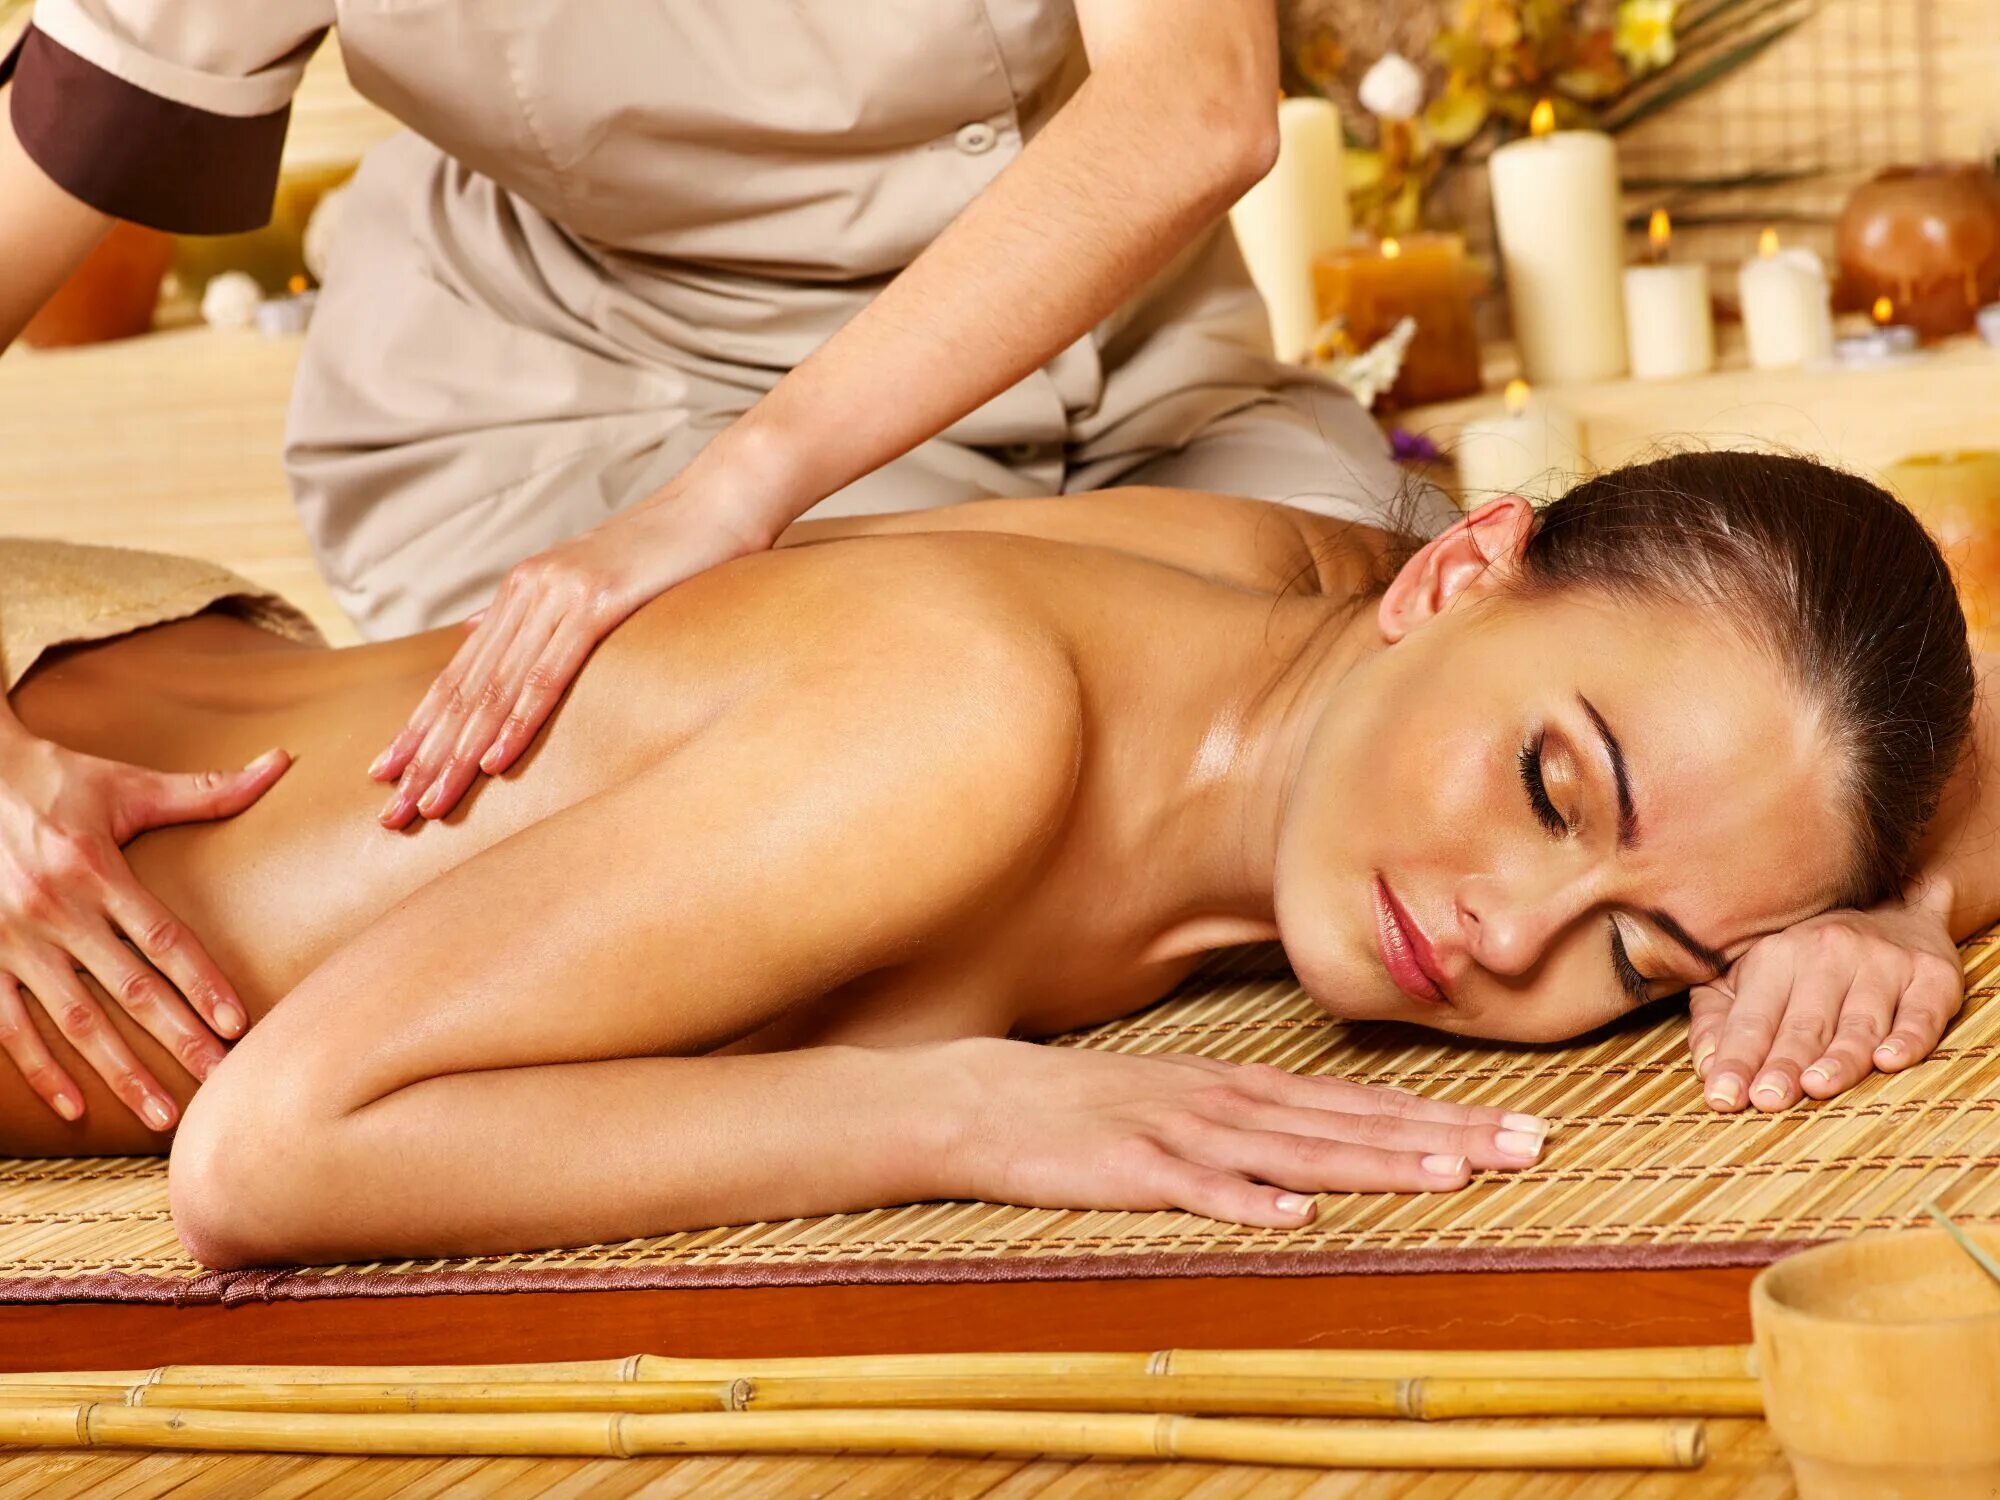 Married woman massage. Массаж тела. Тайский массаж спины. Женский массаж. Общий массаж тела.